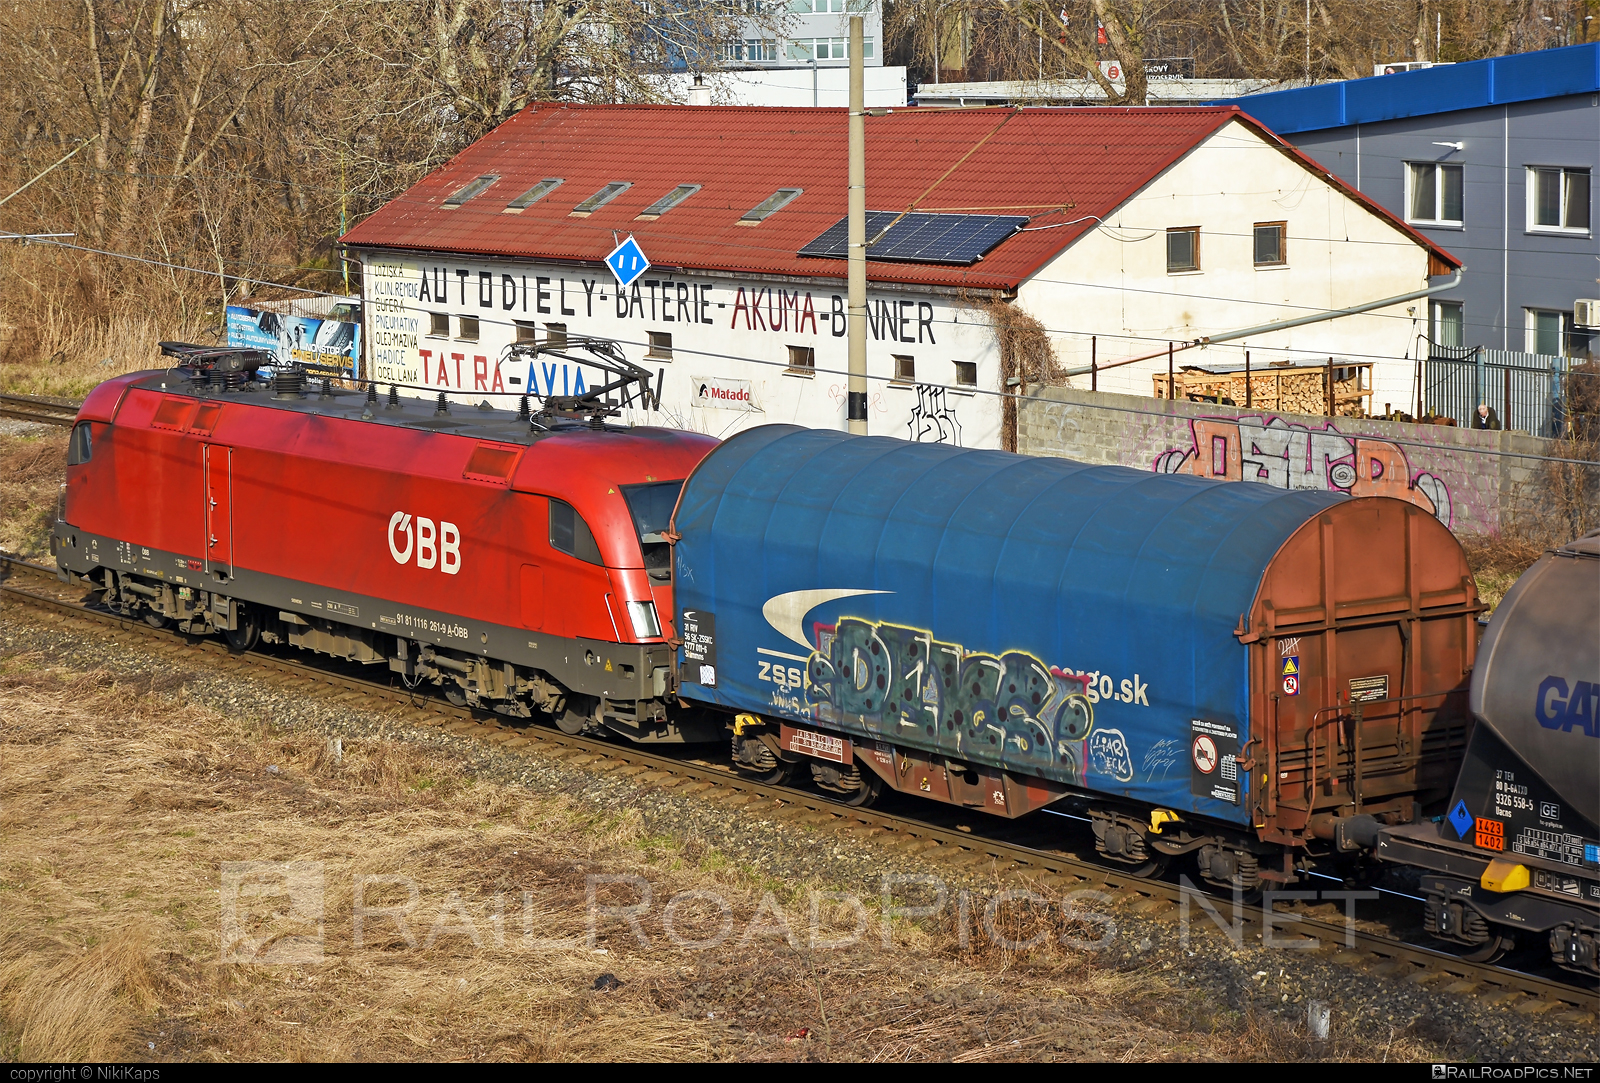 Siemens ES 64 U2 - 1116 261 operated by Rail Cargo Austria AG #es64 #es64u2 #eurosprinter #graffiti #mixofcargo #obb #osterreichischebundesbahnen #rcw #siemens #siemensEs64 #siemensEs64u2 #siemenstaurus #taurus #tauruslocomotive